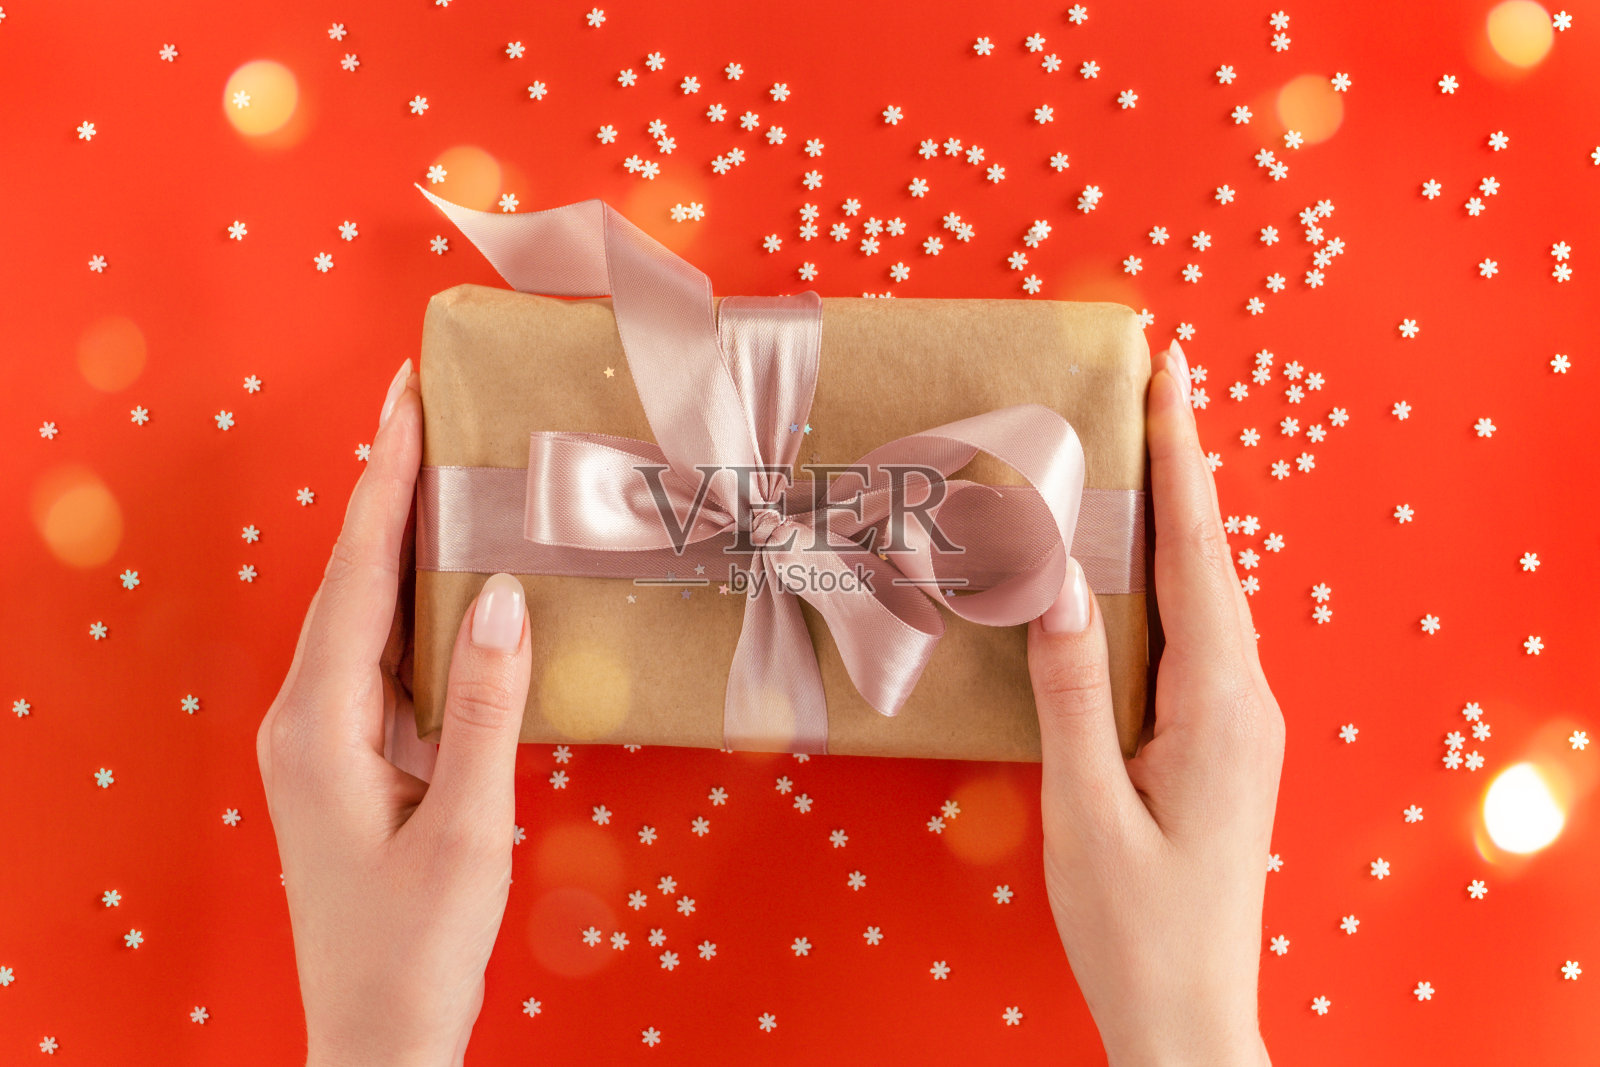 漂亮的女性手捧着用牛皮纸包裹的礼品盒，粉红色的丝带装饰在节日的背景上照片摄影图片